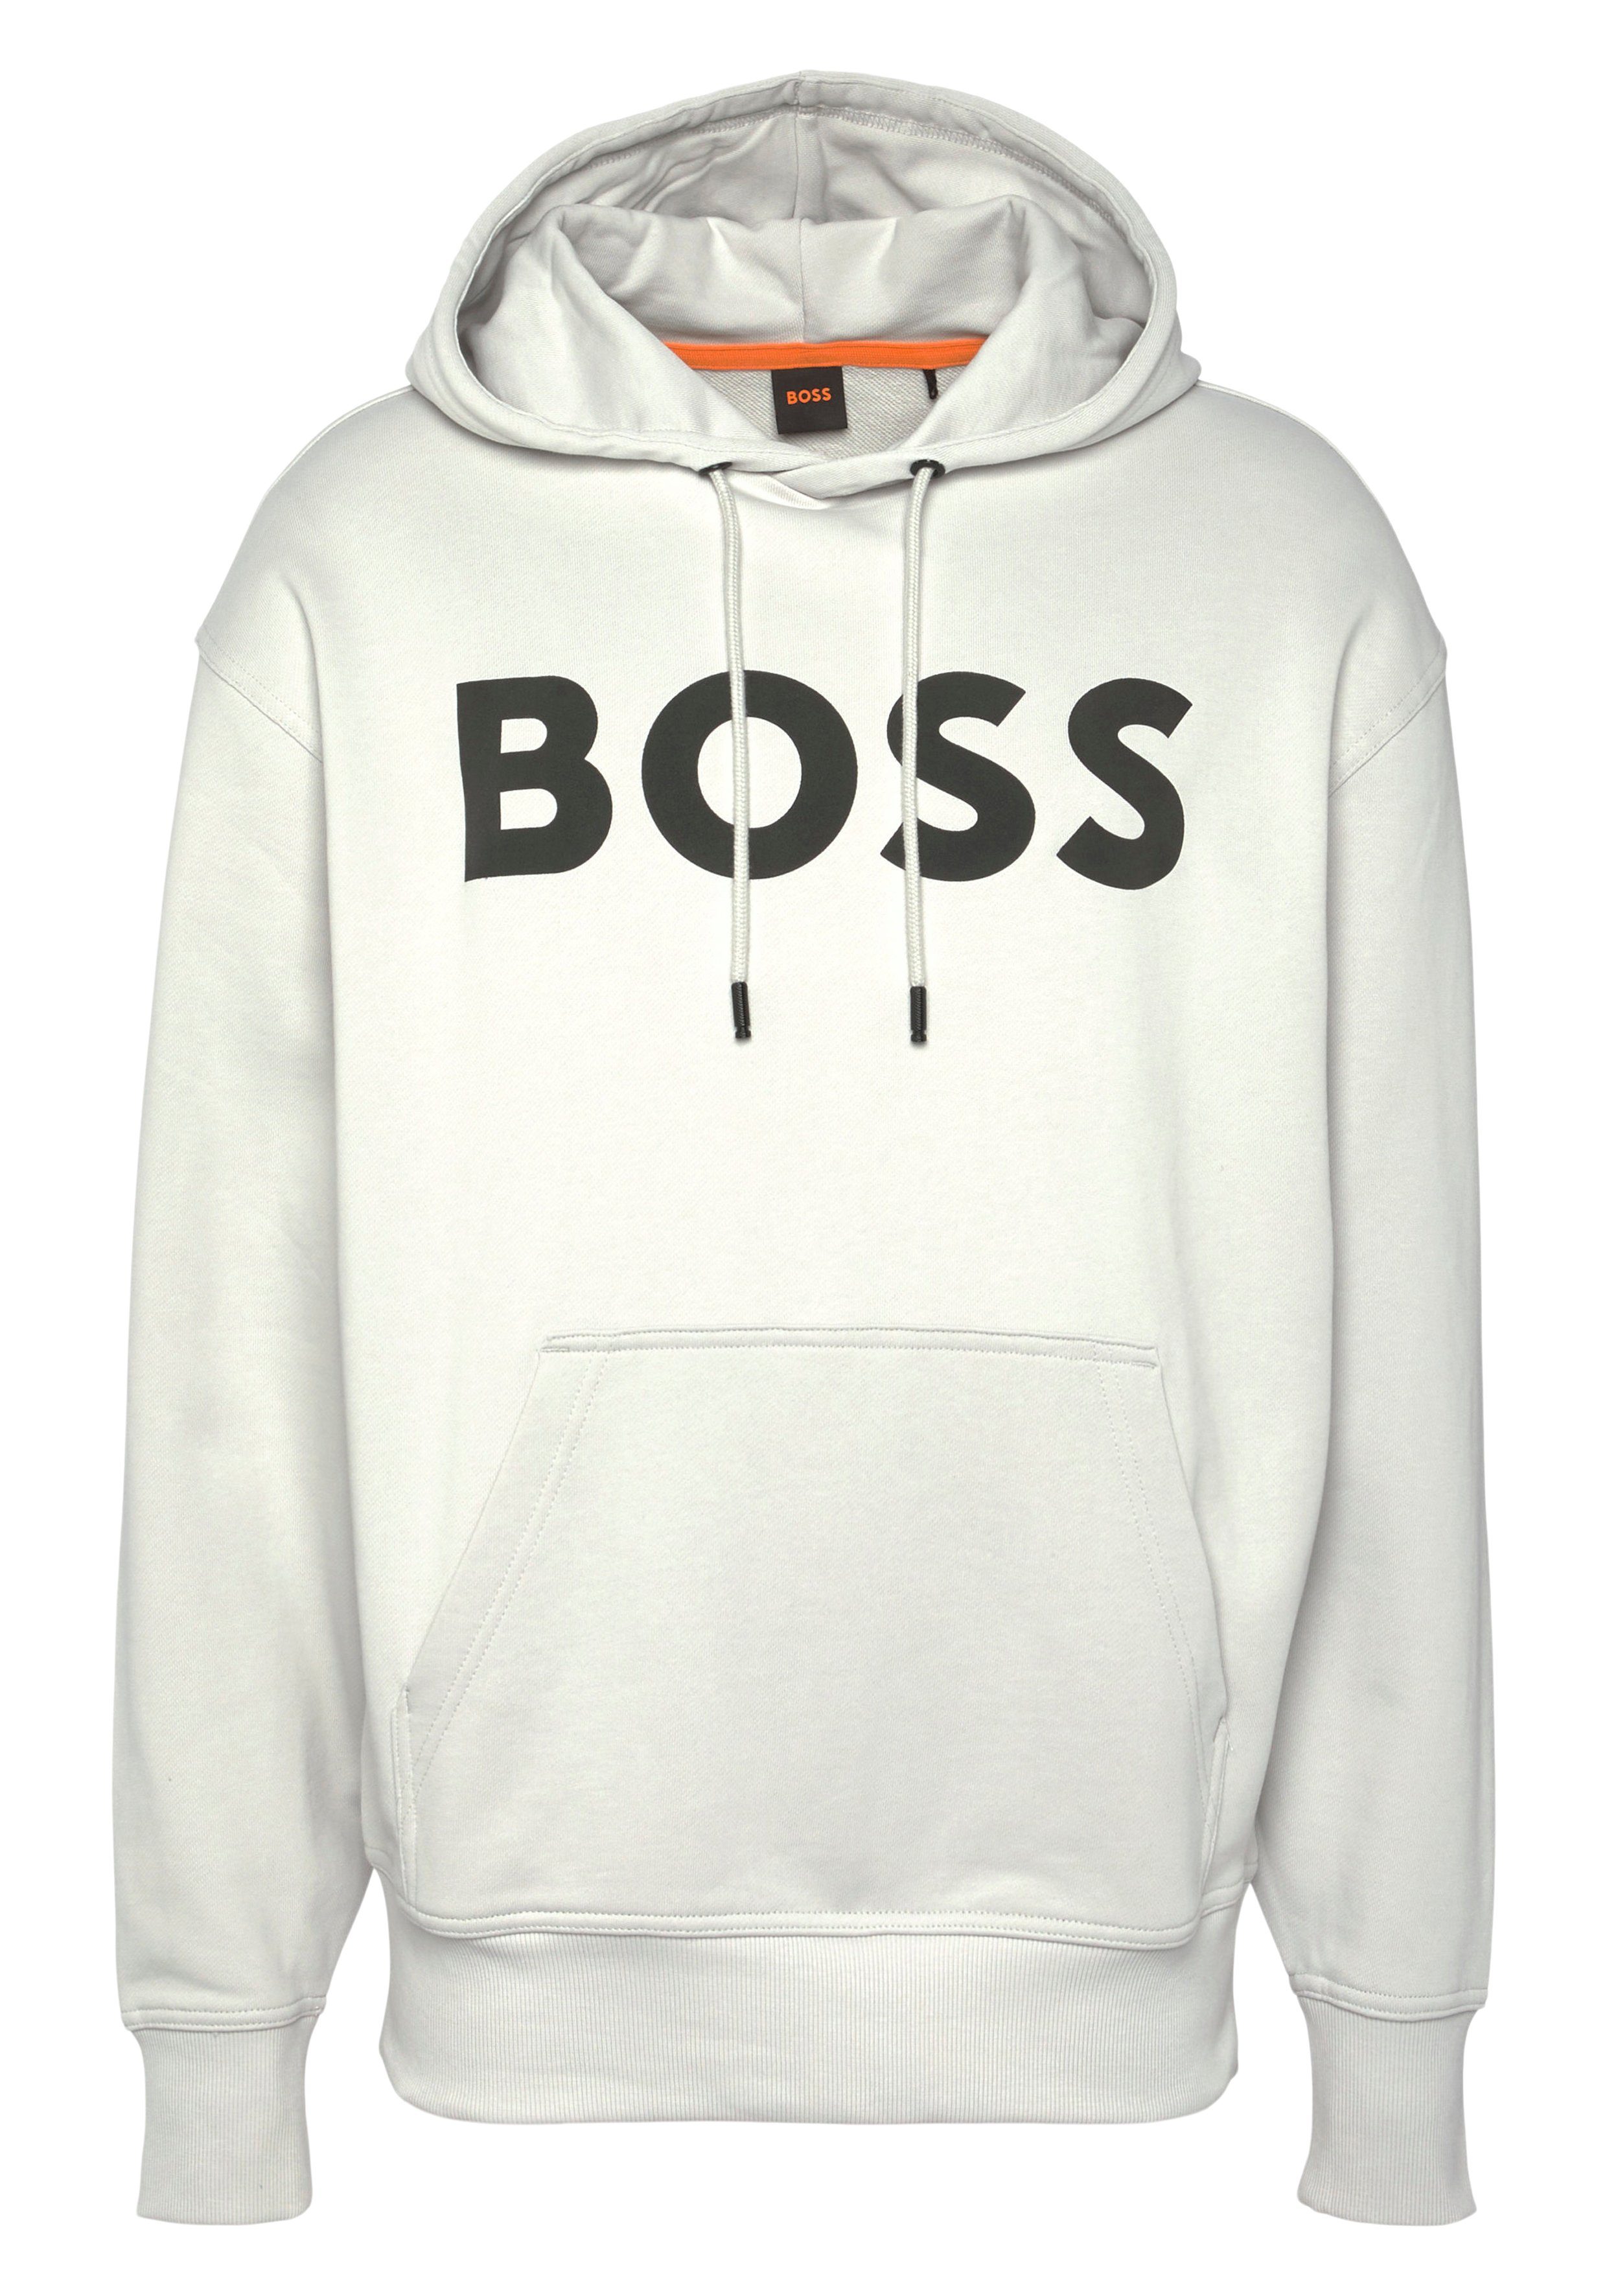 BOSS ORANGE Sweatshirt WebasicHood mit großem BOSS Print auf der Brust Light/Pastel Grey